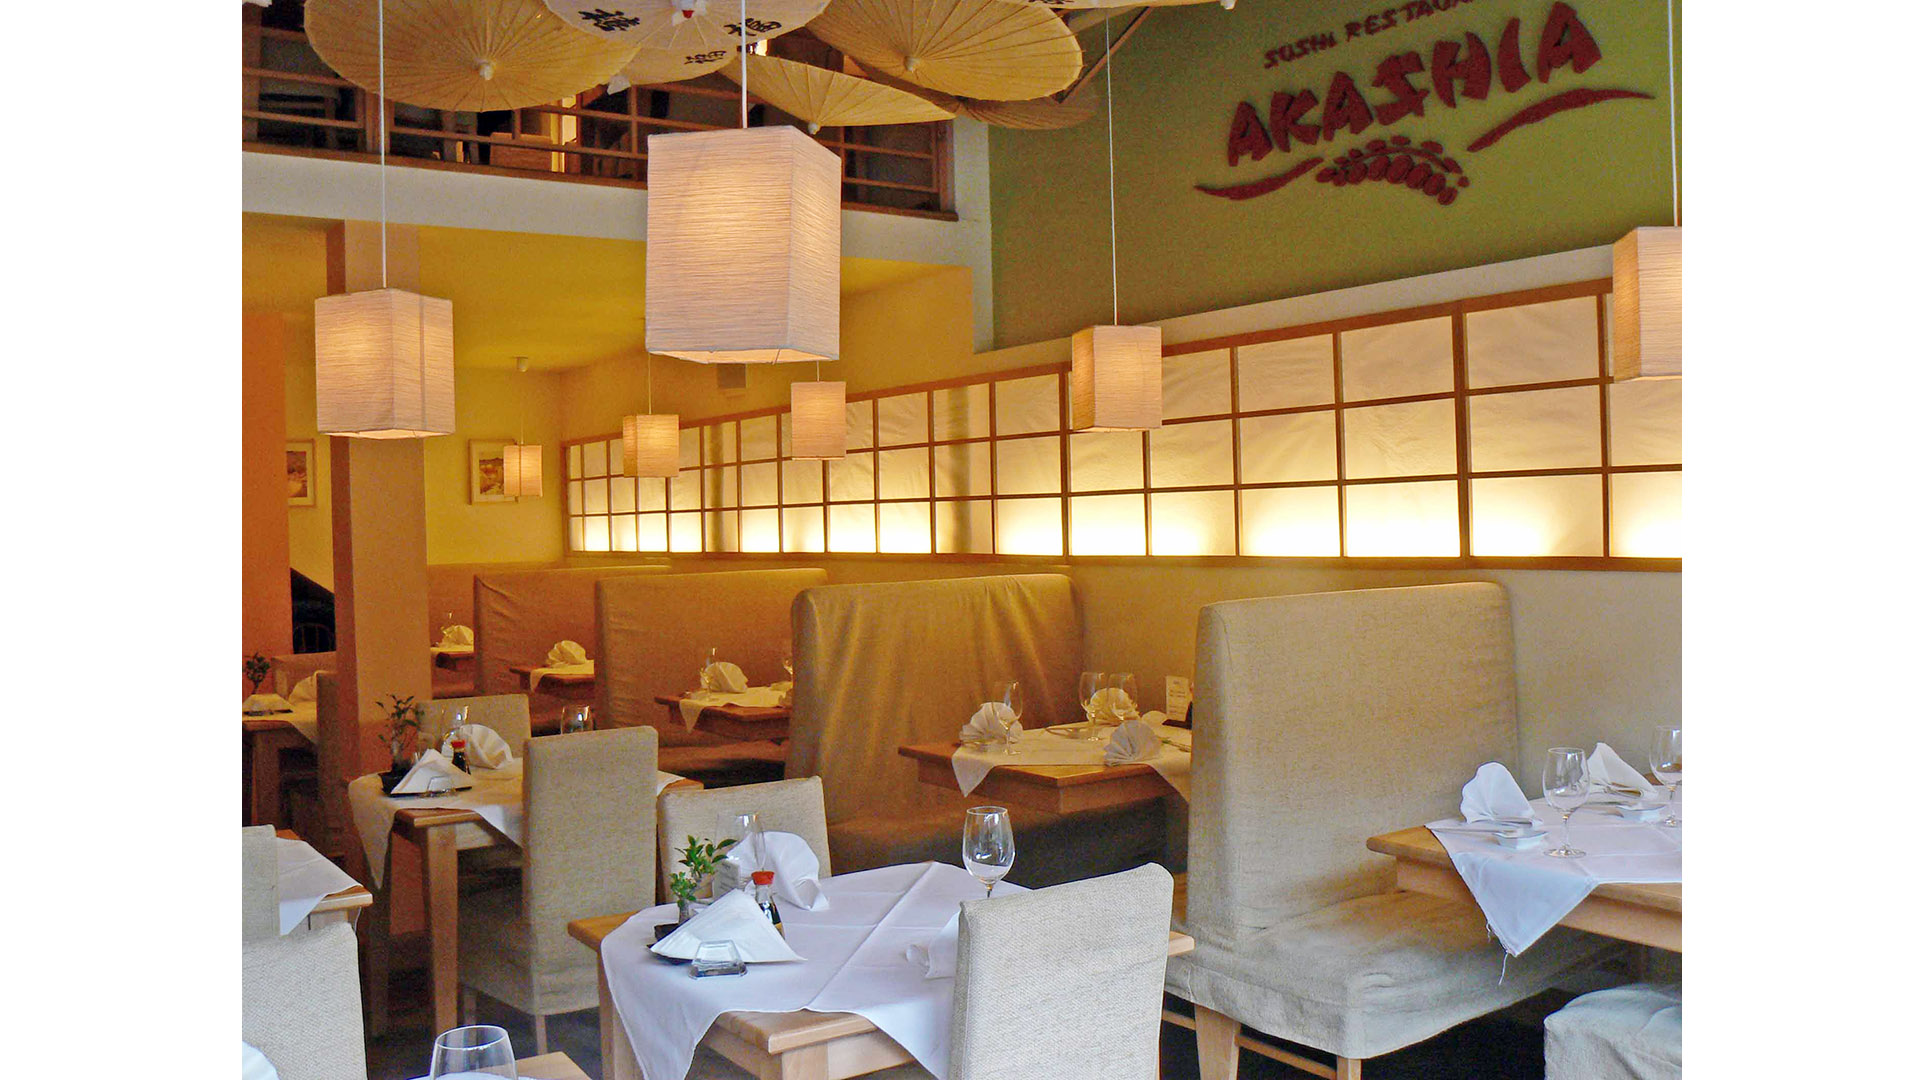 Restauracja Akashia Sushi wnętrza Proart projekt adaptacja